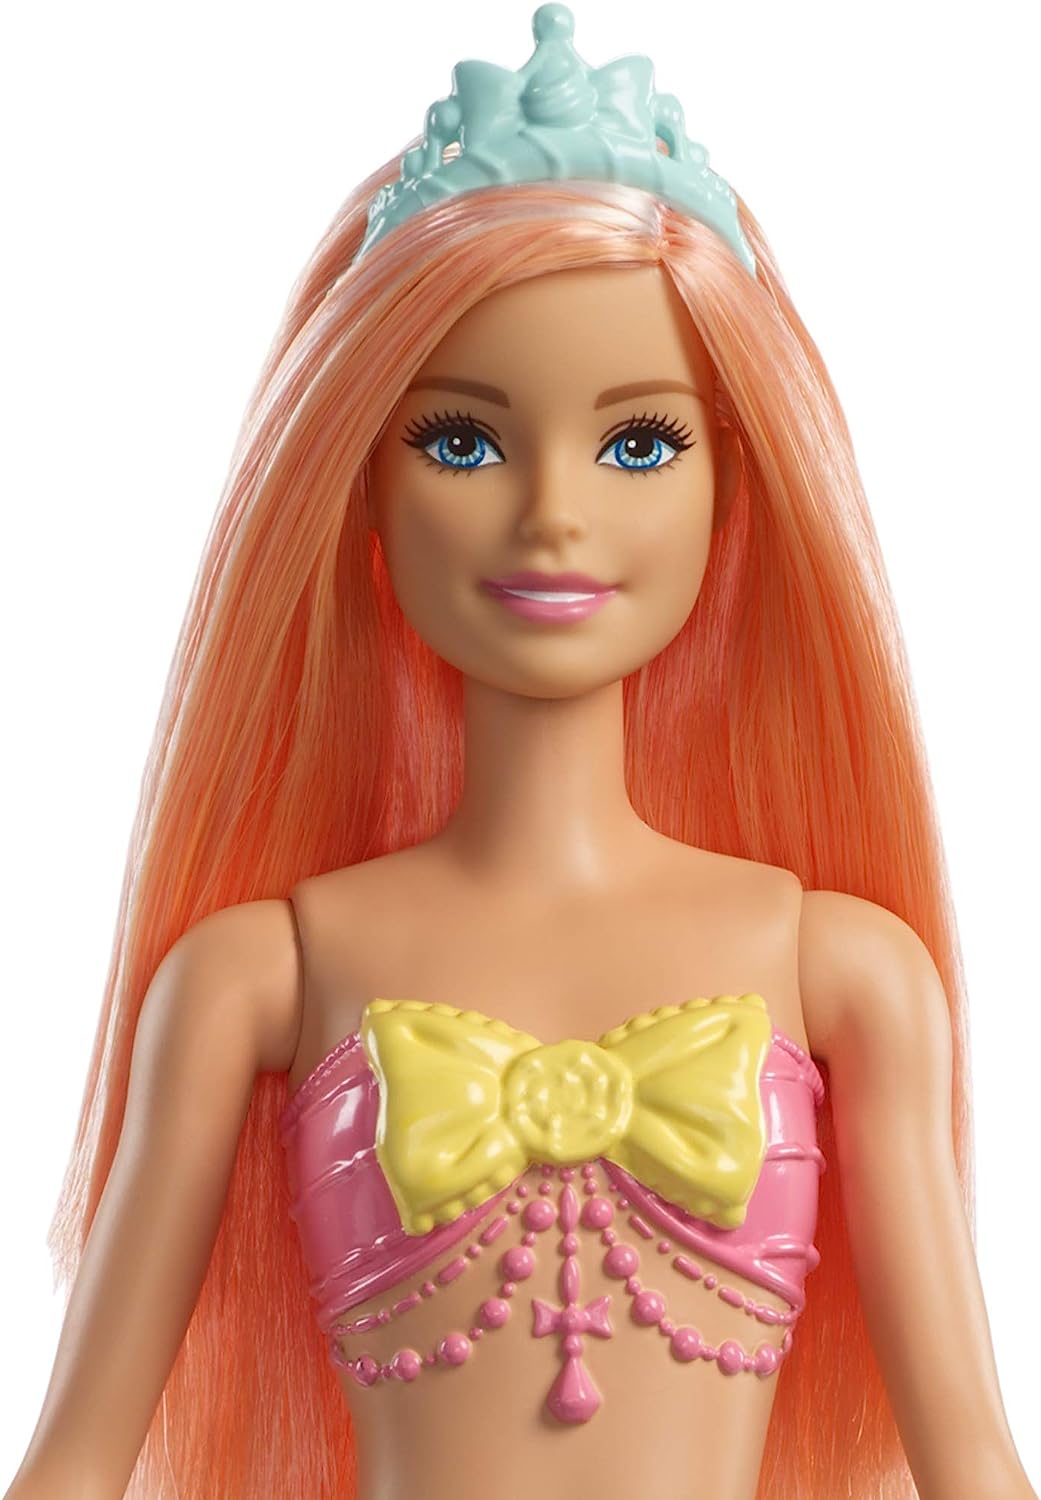 楽天市場 バービー バービー人形 ファンタジー 人魚 マーメイド 送料無料 Barbie Dreamtopia Mermaid Doll Approx 12 Inch Rainbow Tail Coral Hair For 3 To 7 Year Olds バービー バービー人形 ファンタジー 人魚 マーメイド Angelica